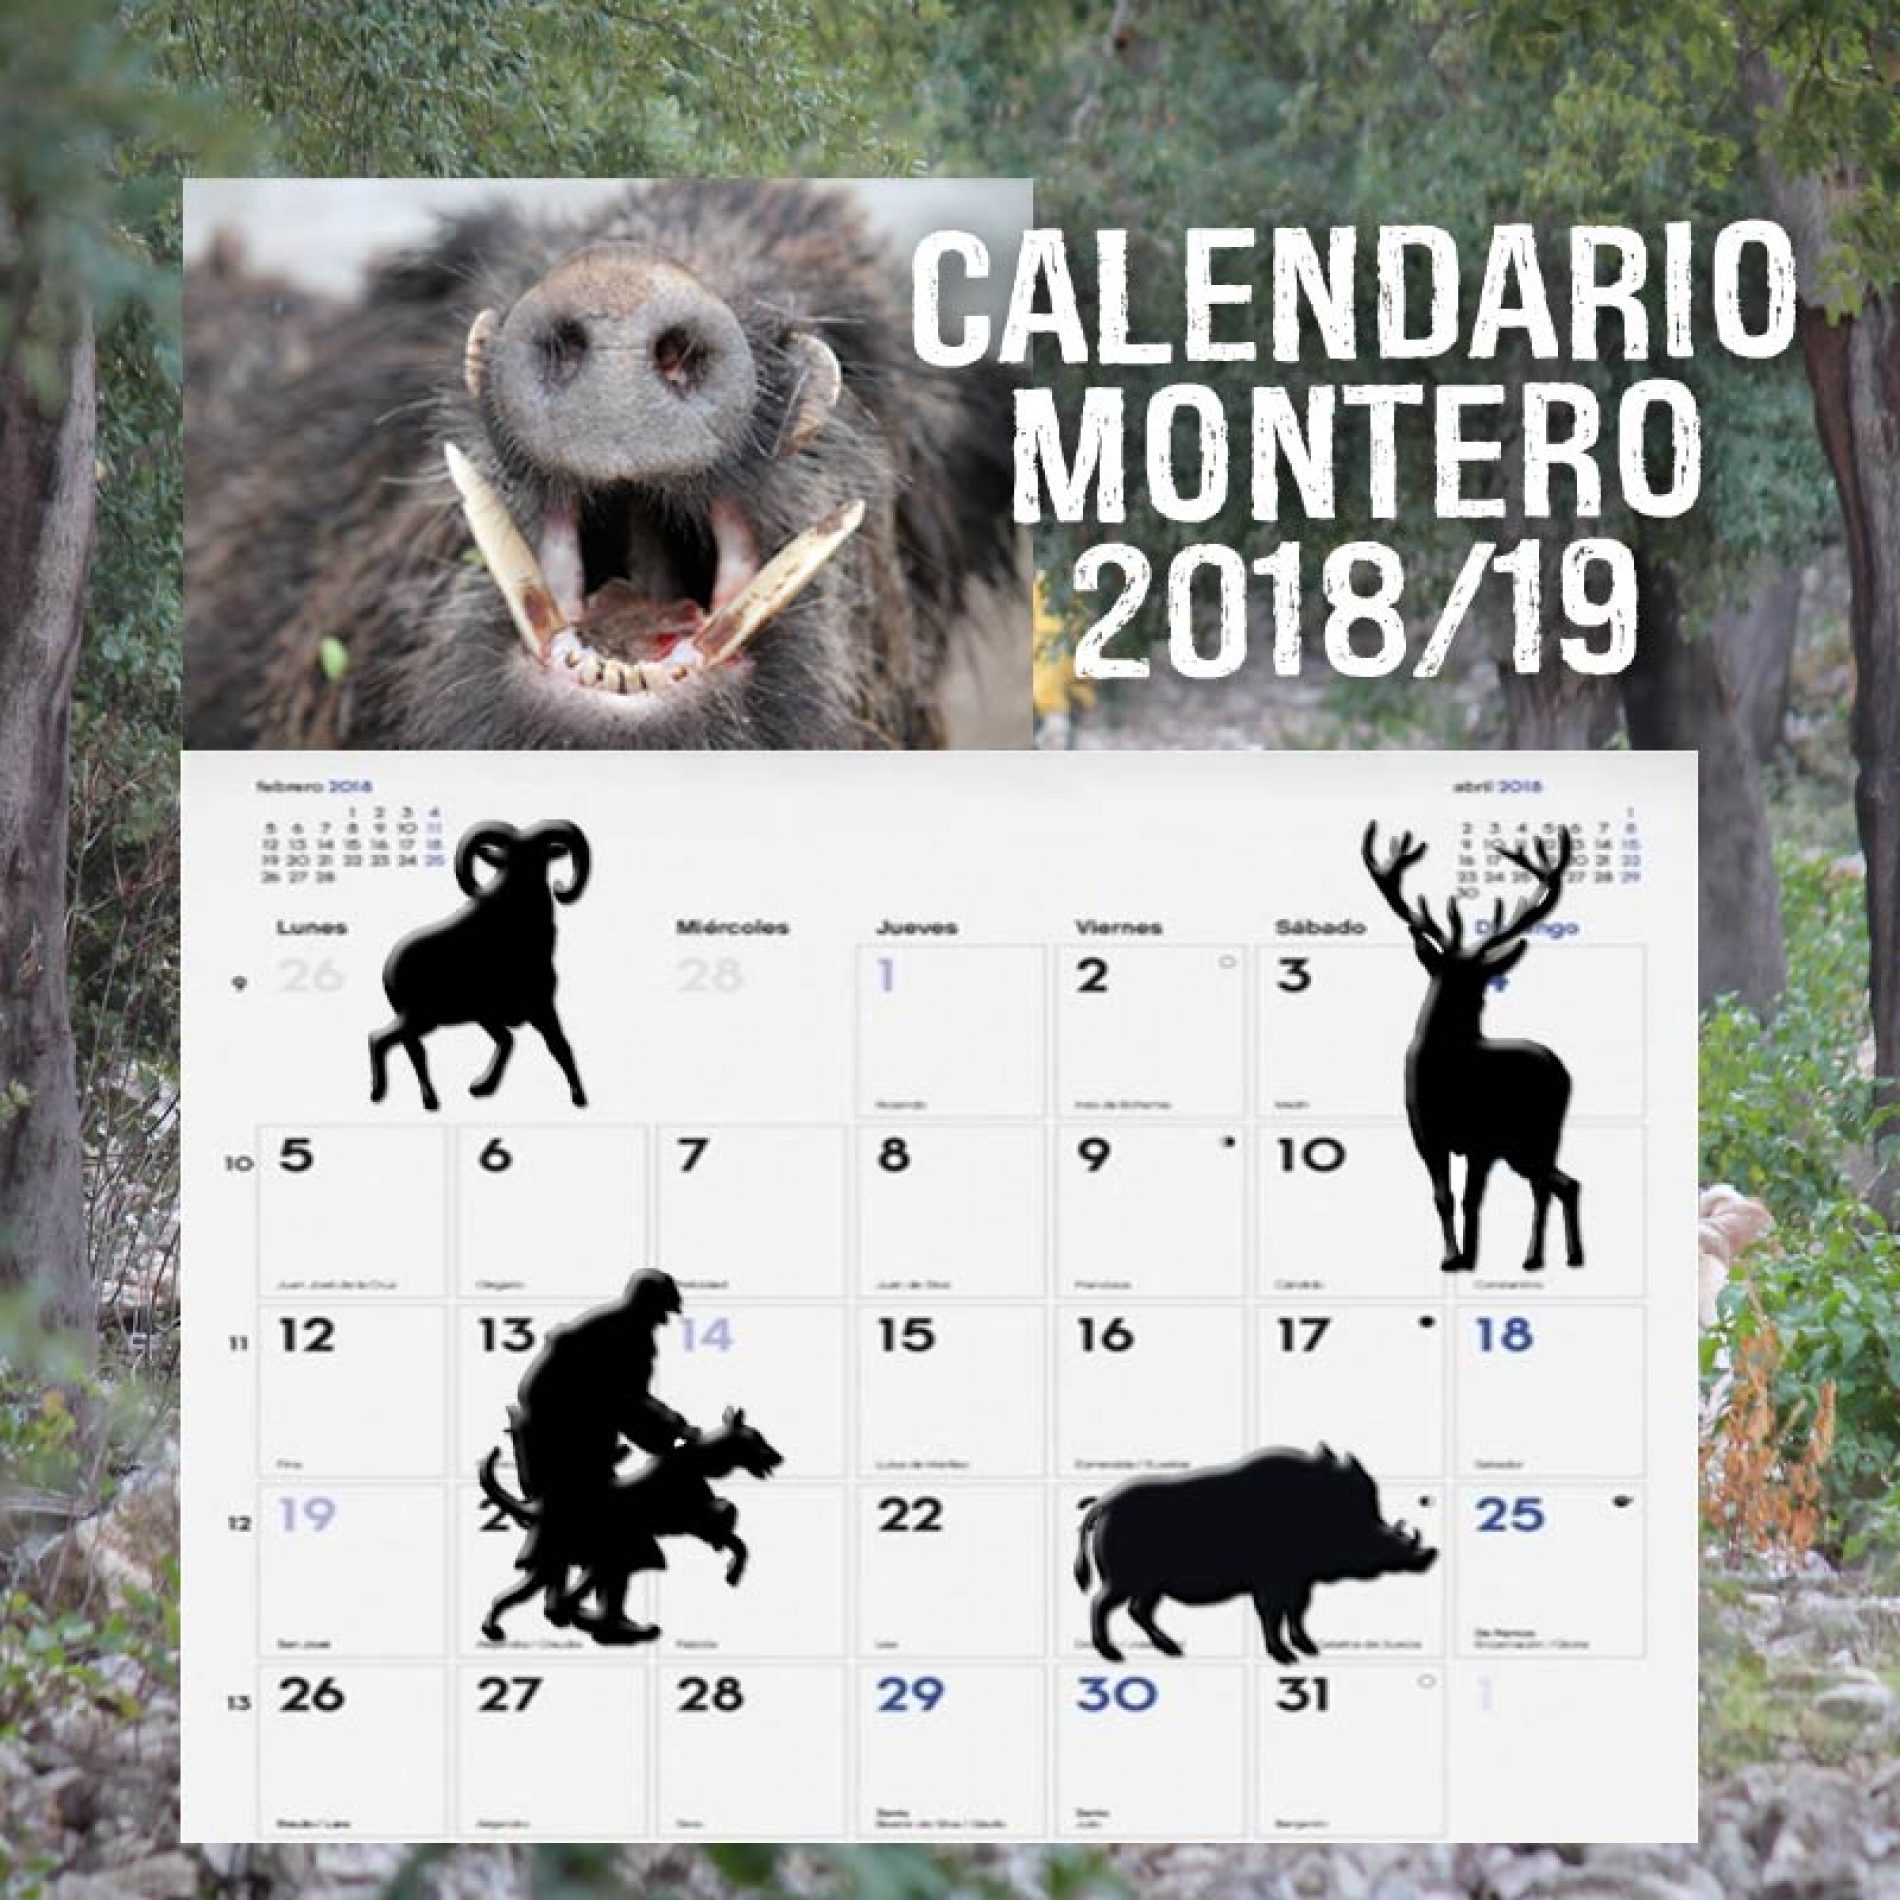 Calendario montero temporada 2018/2019